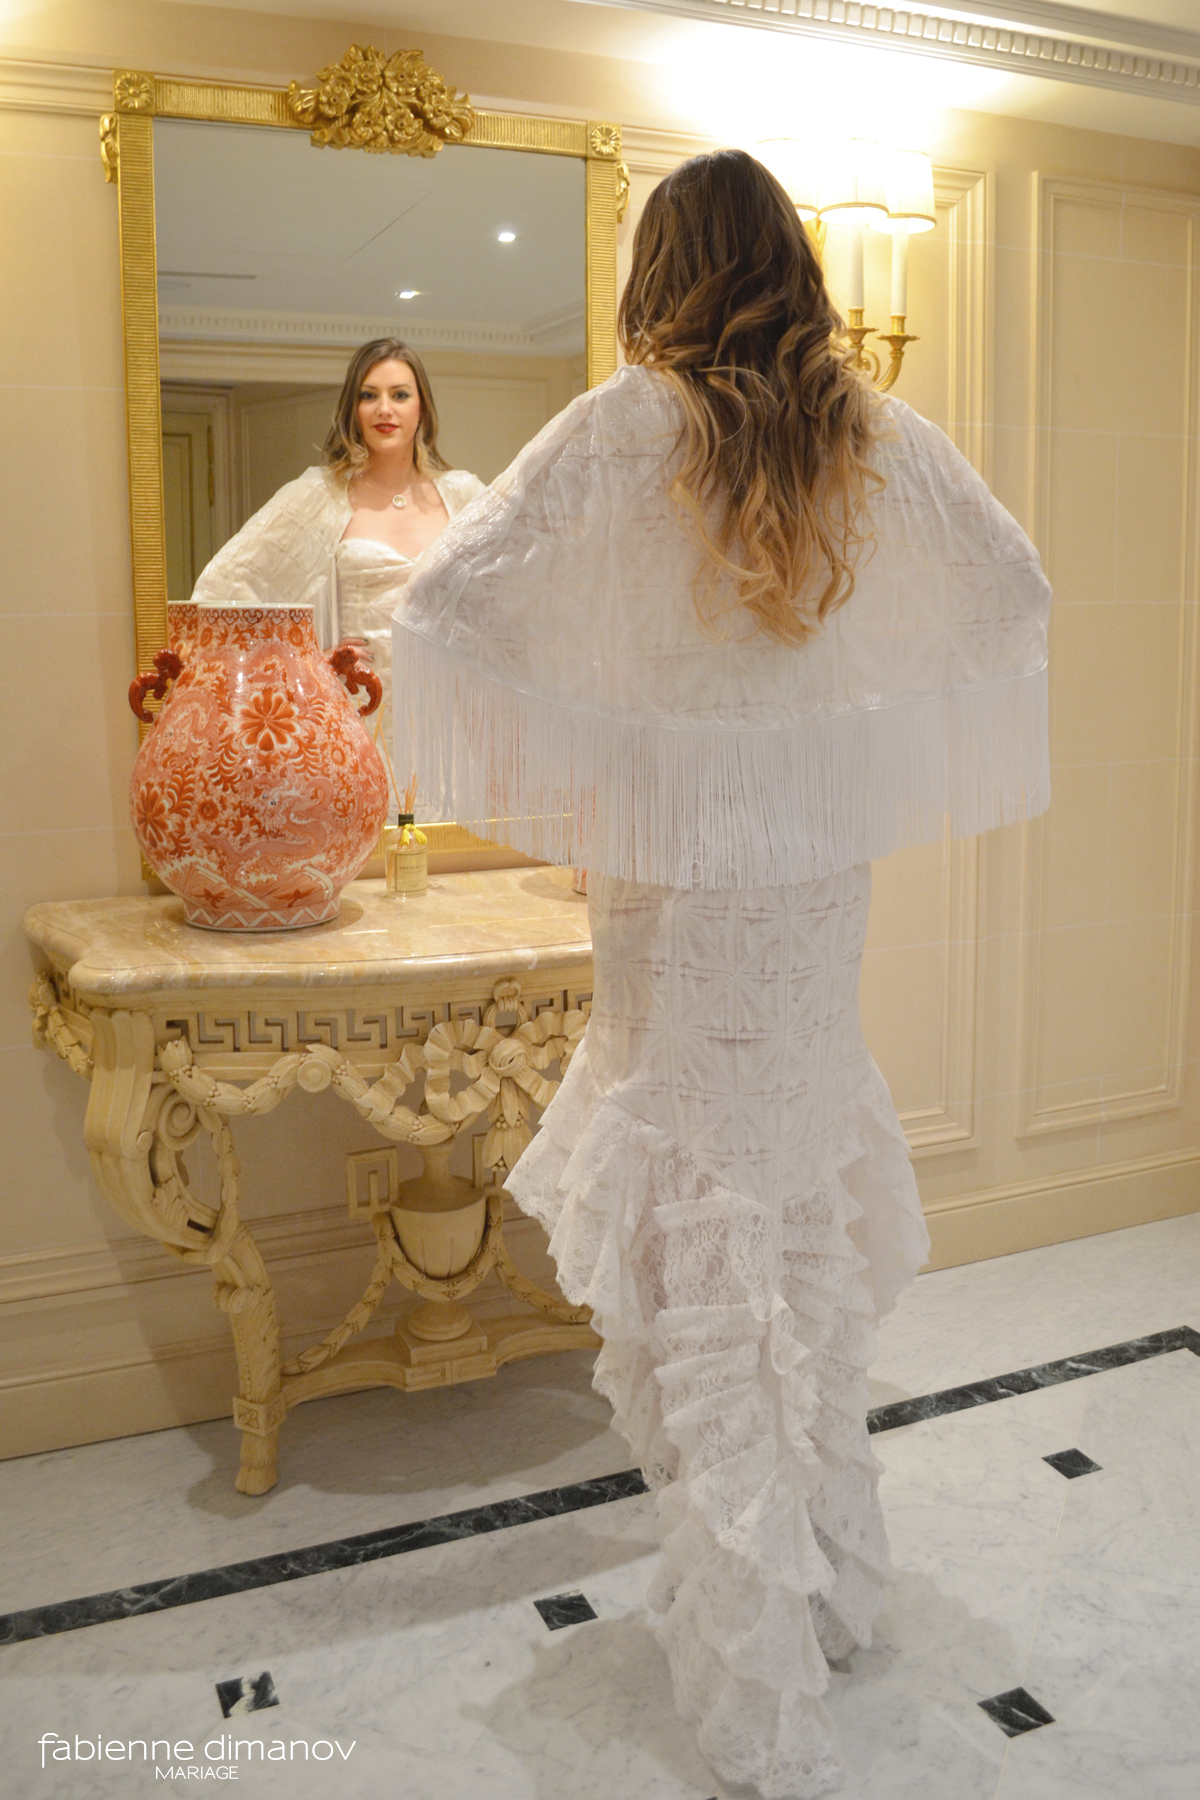 Robe de mariée - Cristal - Fabienne Dimanov Mariage